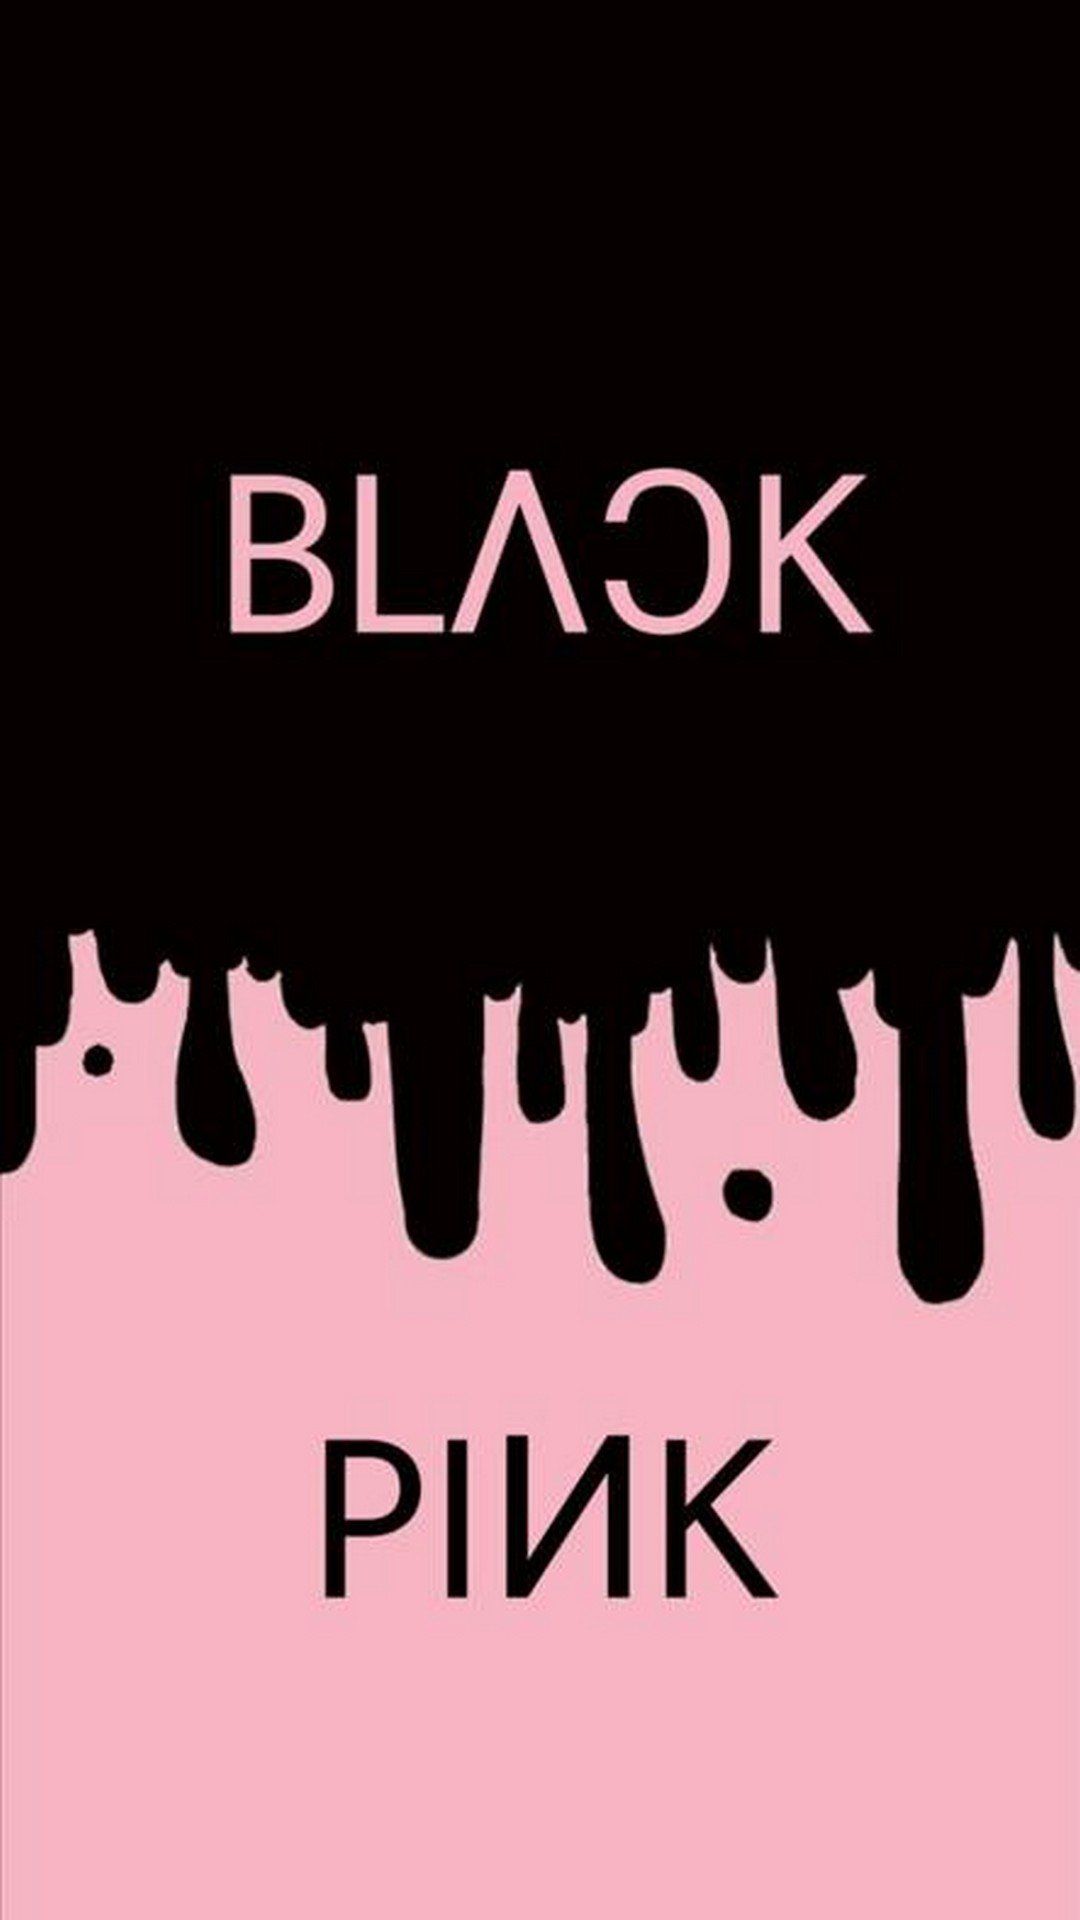 Blackpink Logo Wallpaper Blackpink Black Pink Blackpink Photos | Images ...